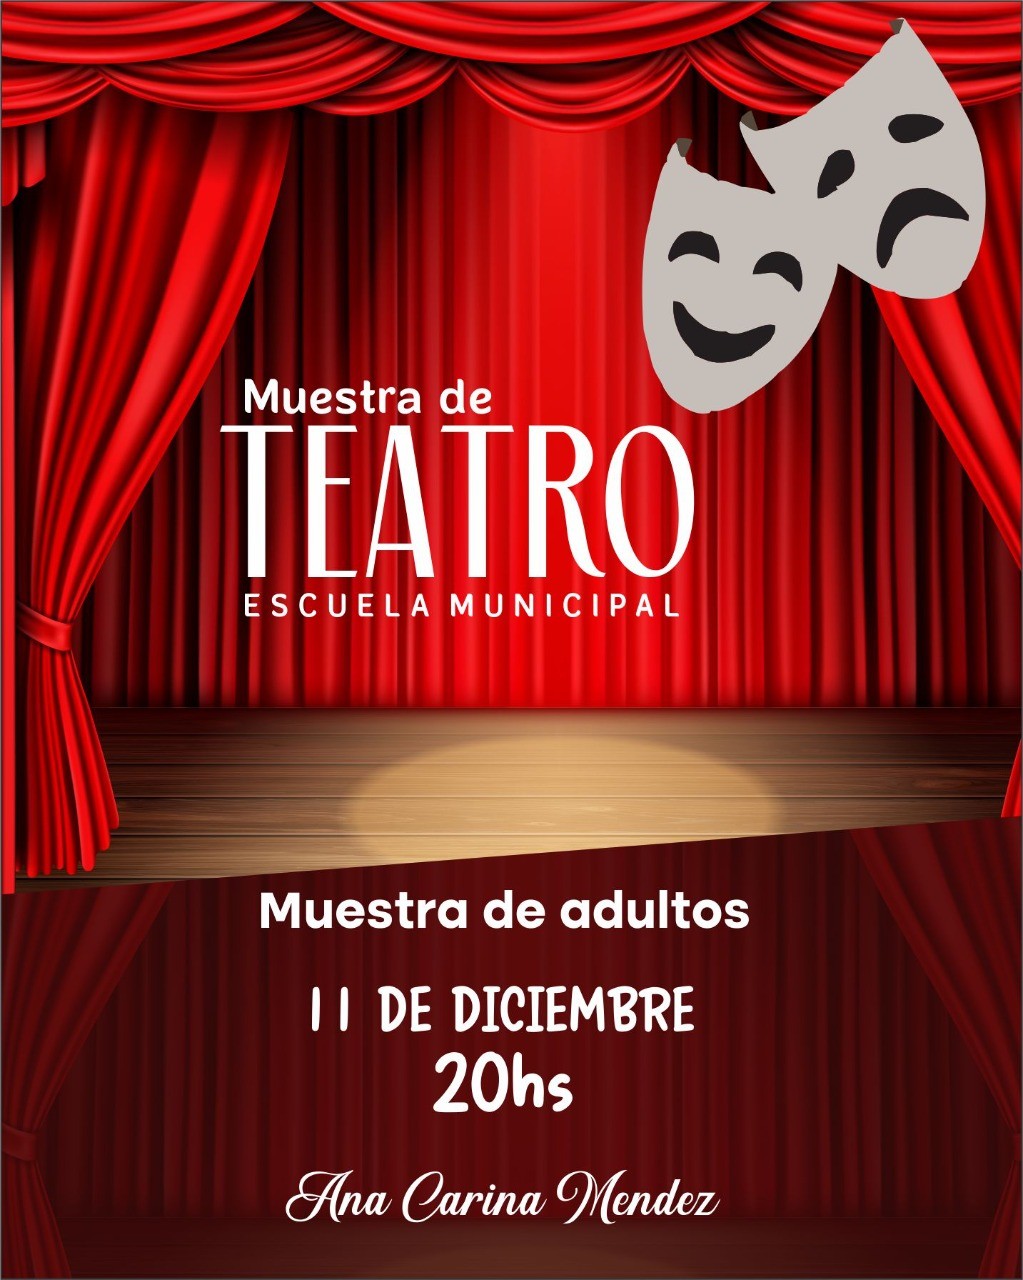 Se desarrollará la muestra de teatro de la Escuela Municipal